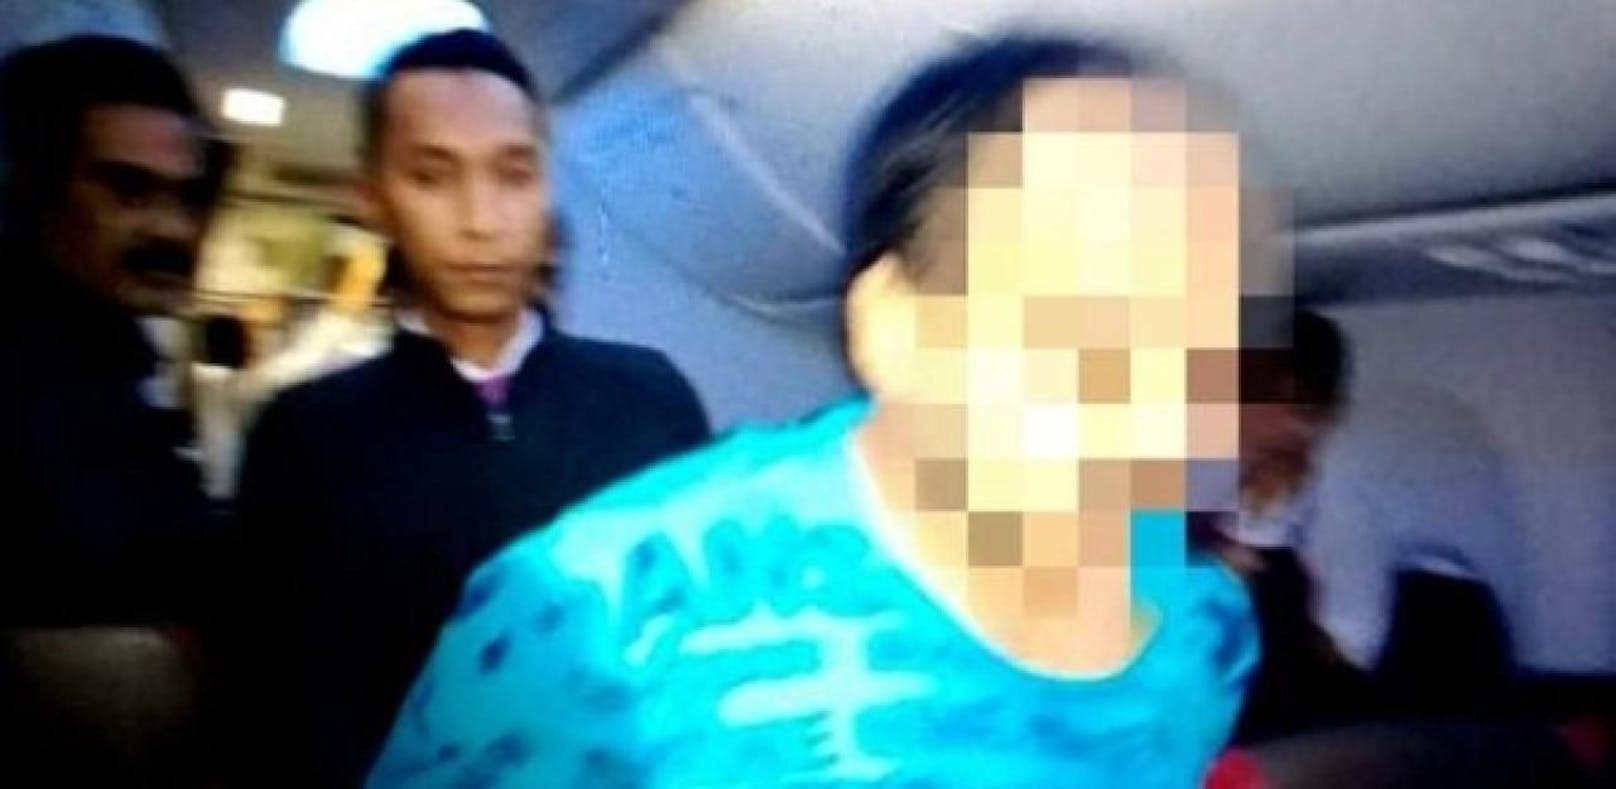 Student strippte im Flugzeug – festgenommen